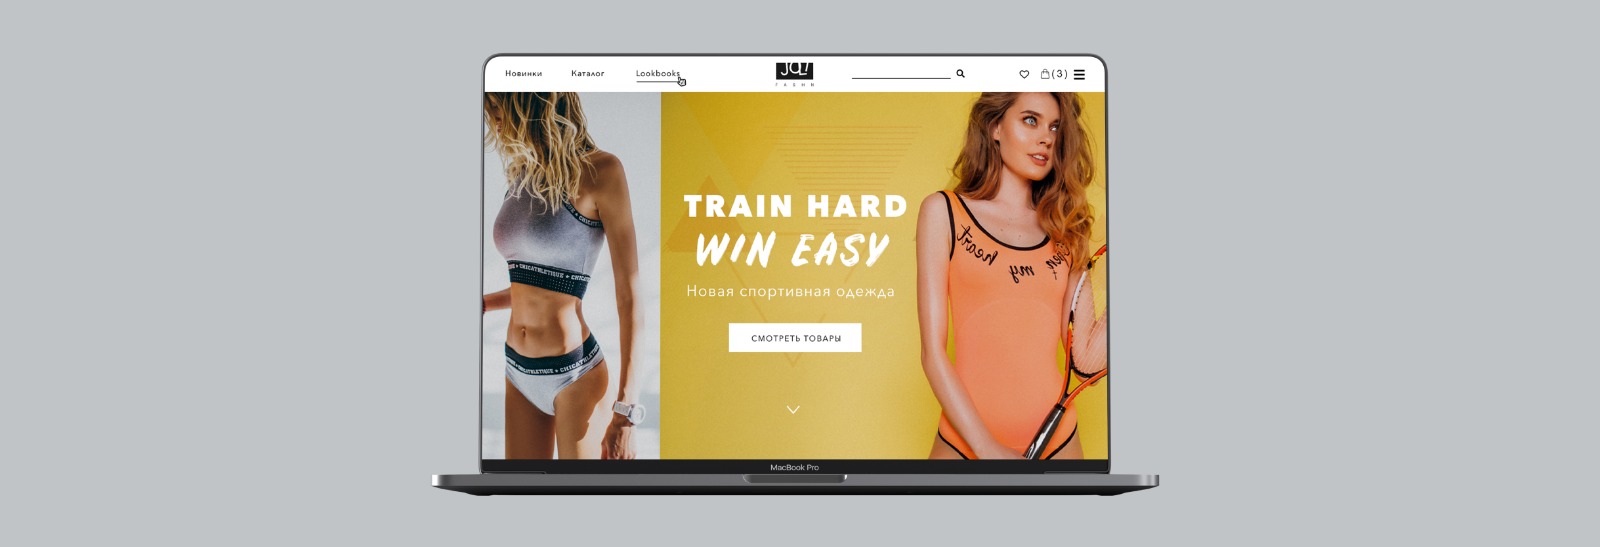 Концепция интернет-магазина спортивной одежды